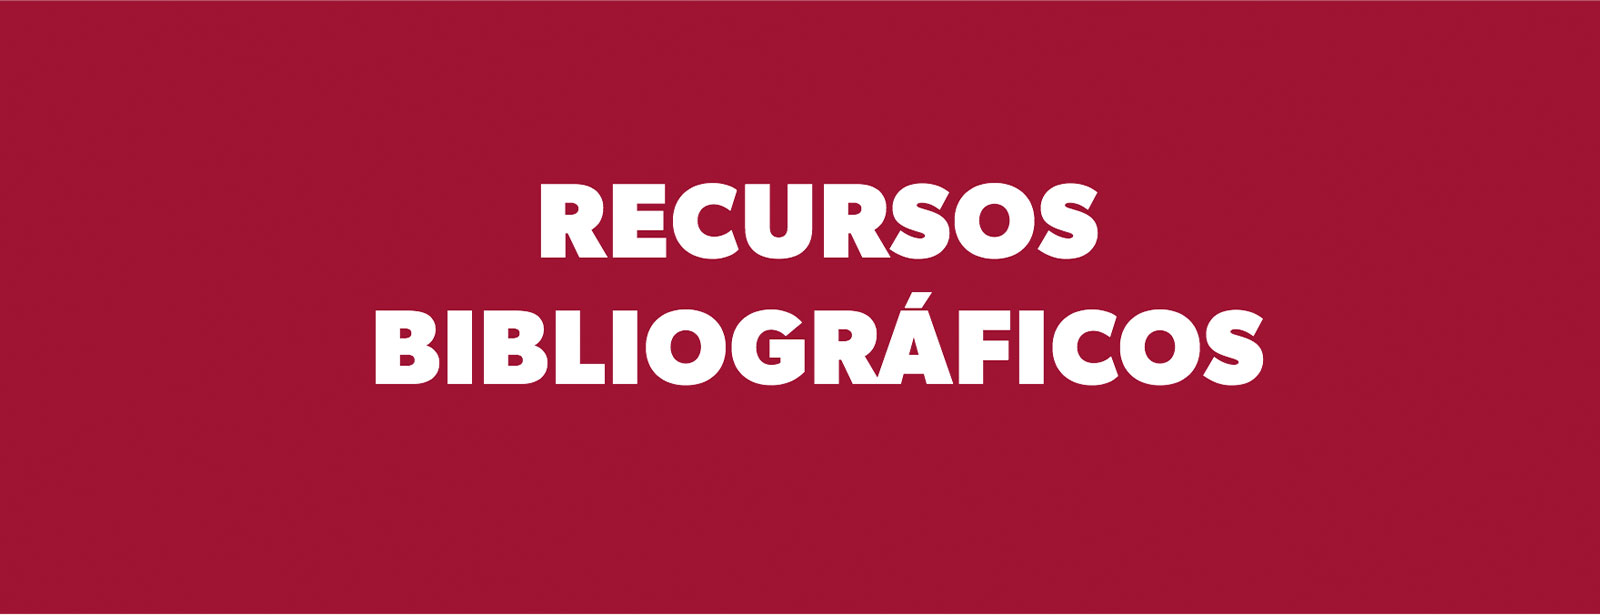 Recursos Bibliográficos de la Universidad de los Andes